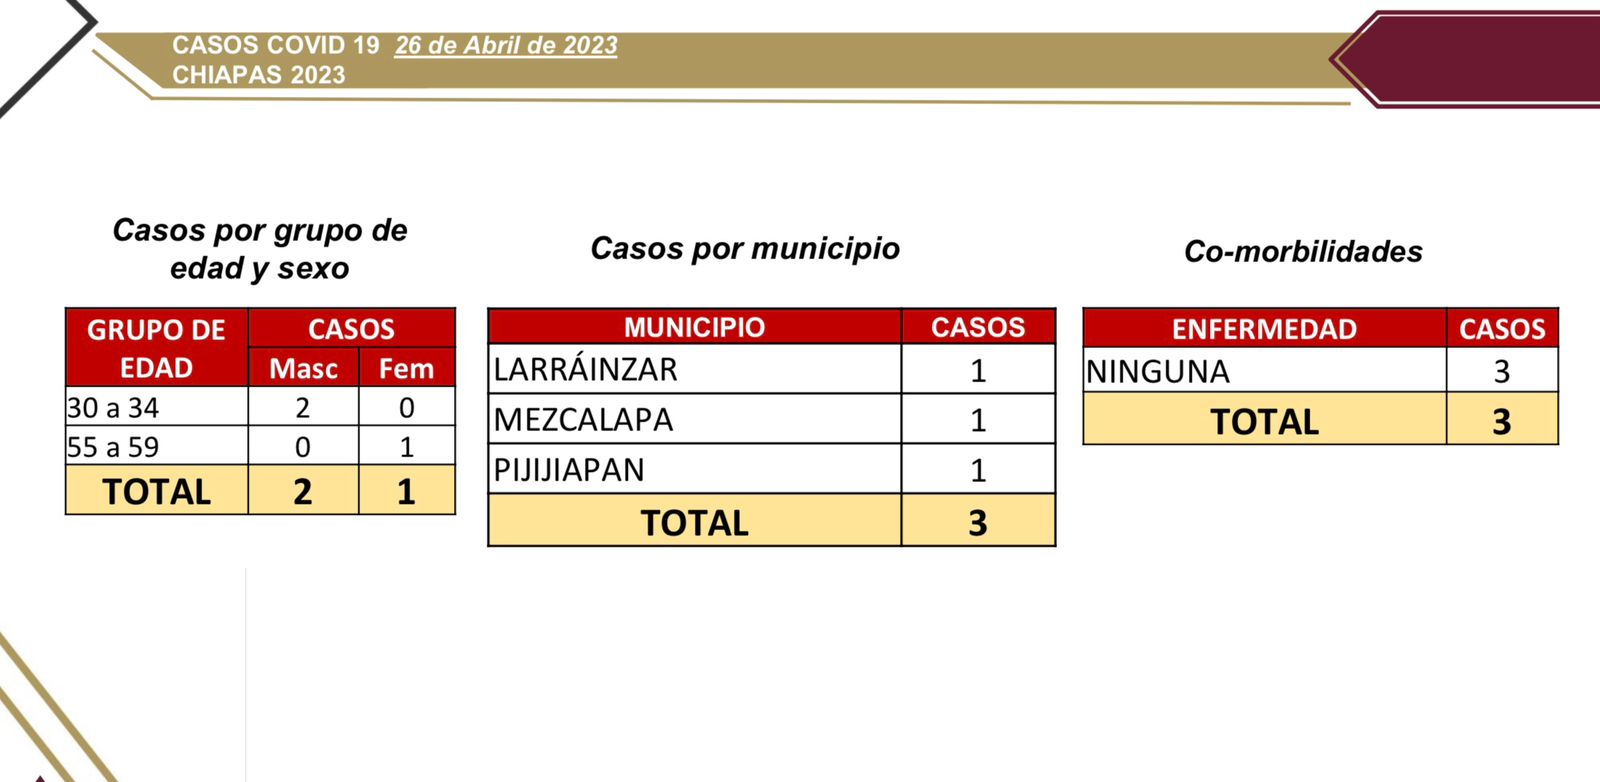 3 casos nuevos de COVID-19 en Chiapas.jpg